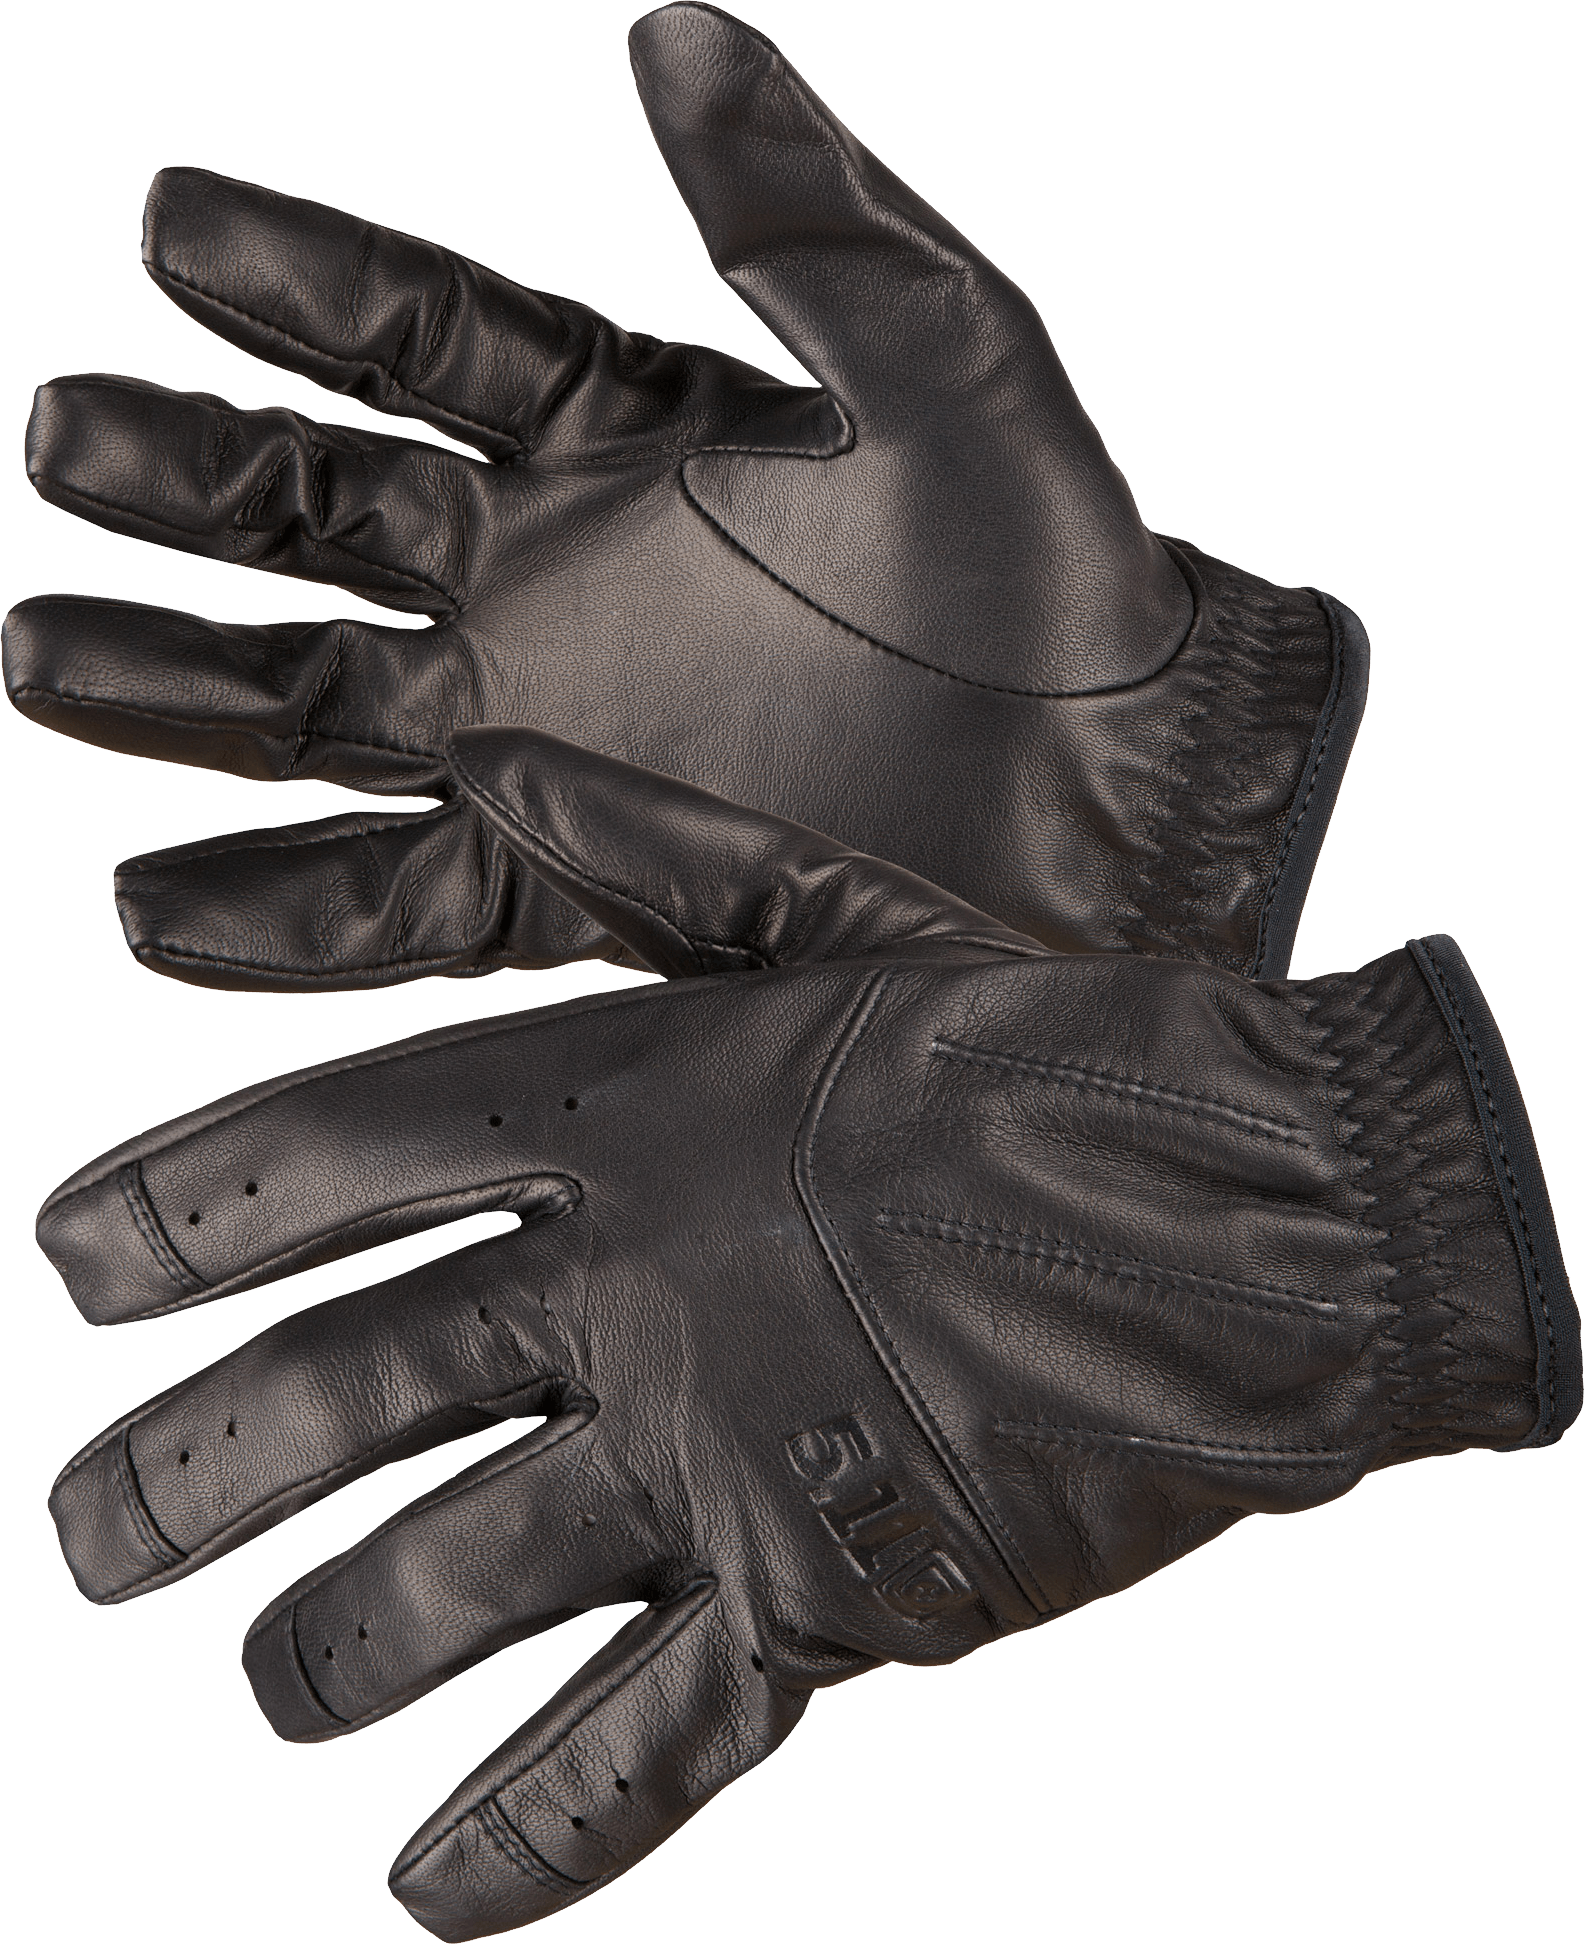 Download Black Leather Gloves Png Image HQ PNG Image | FreePNGImg